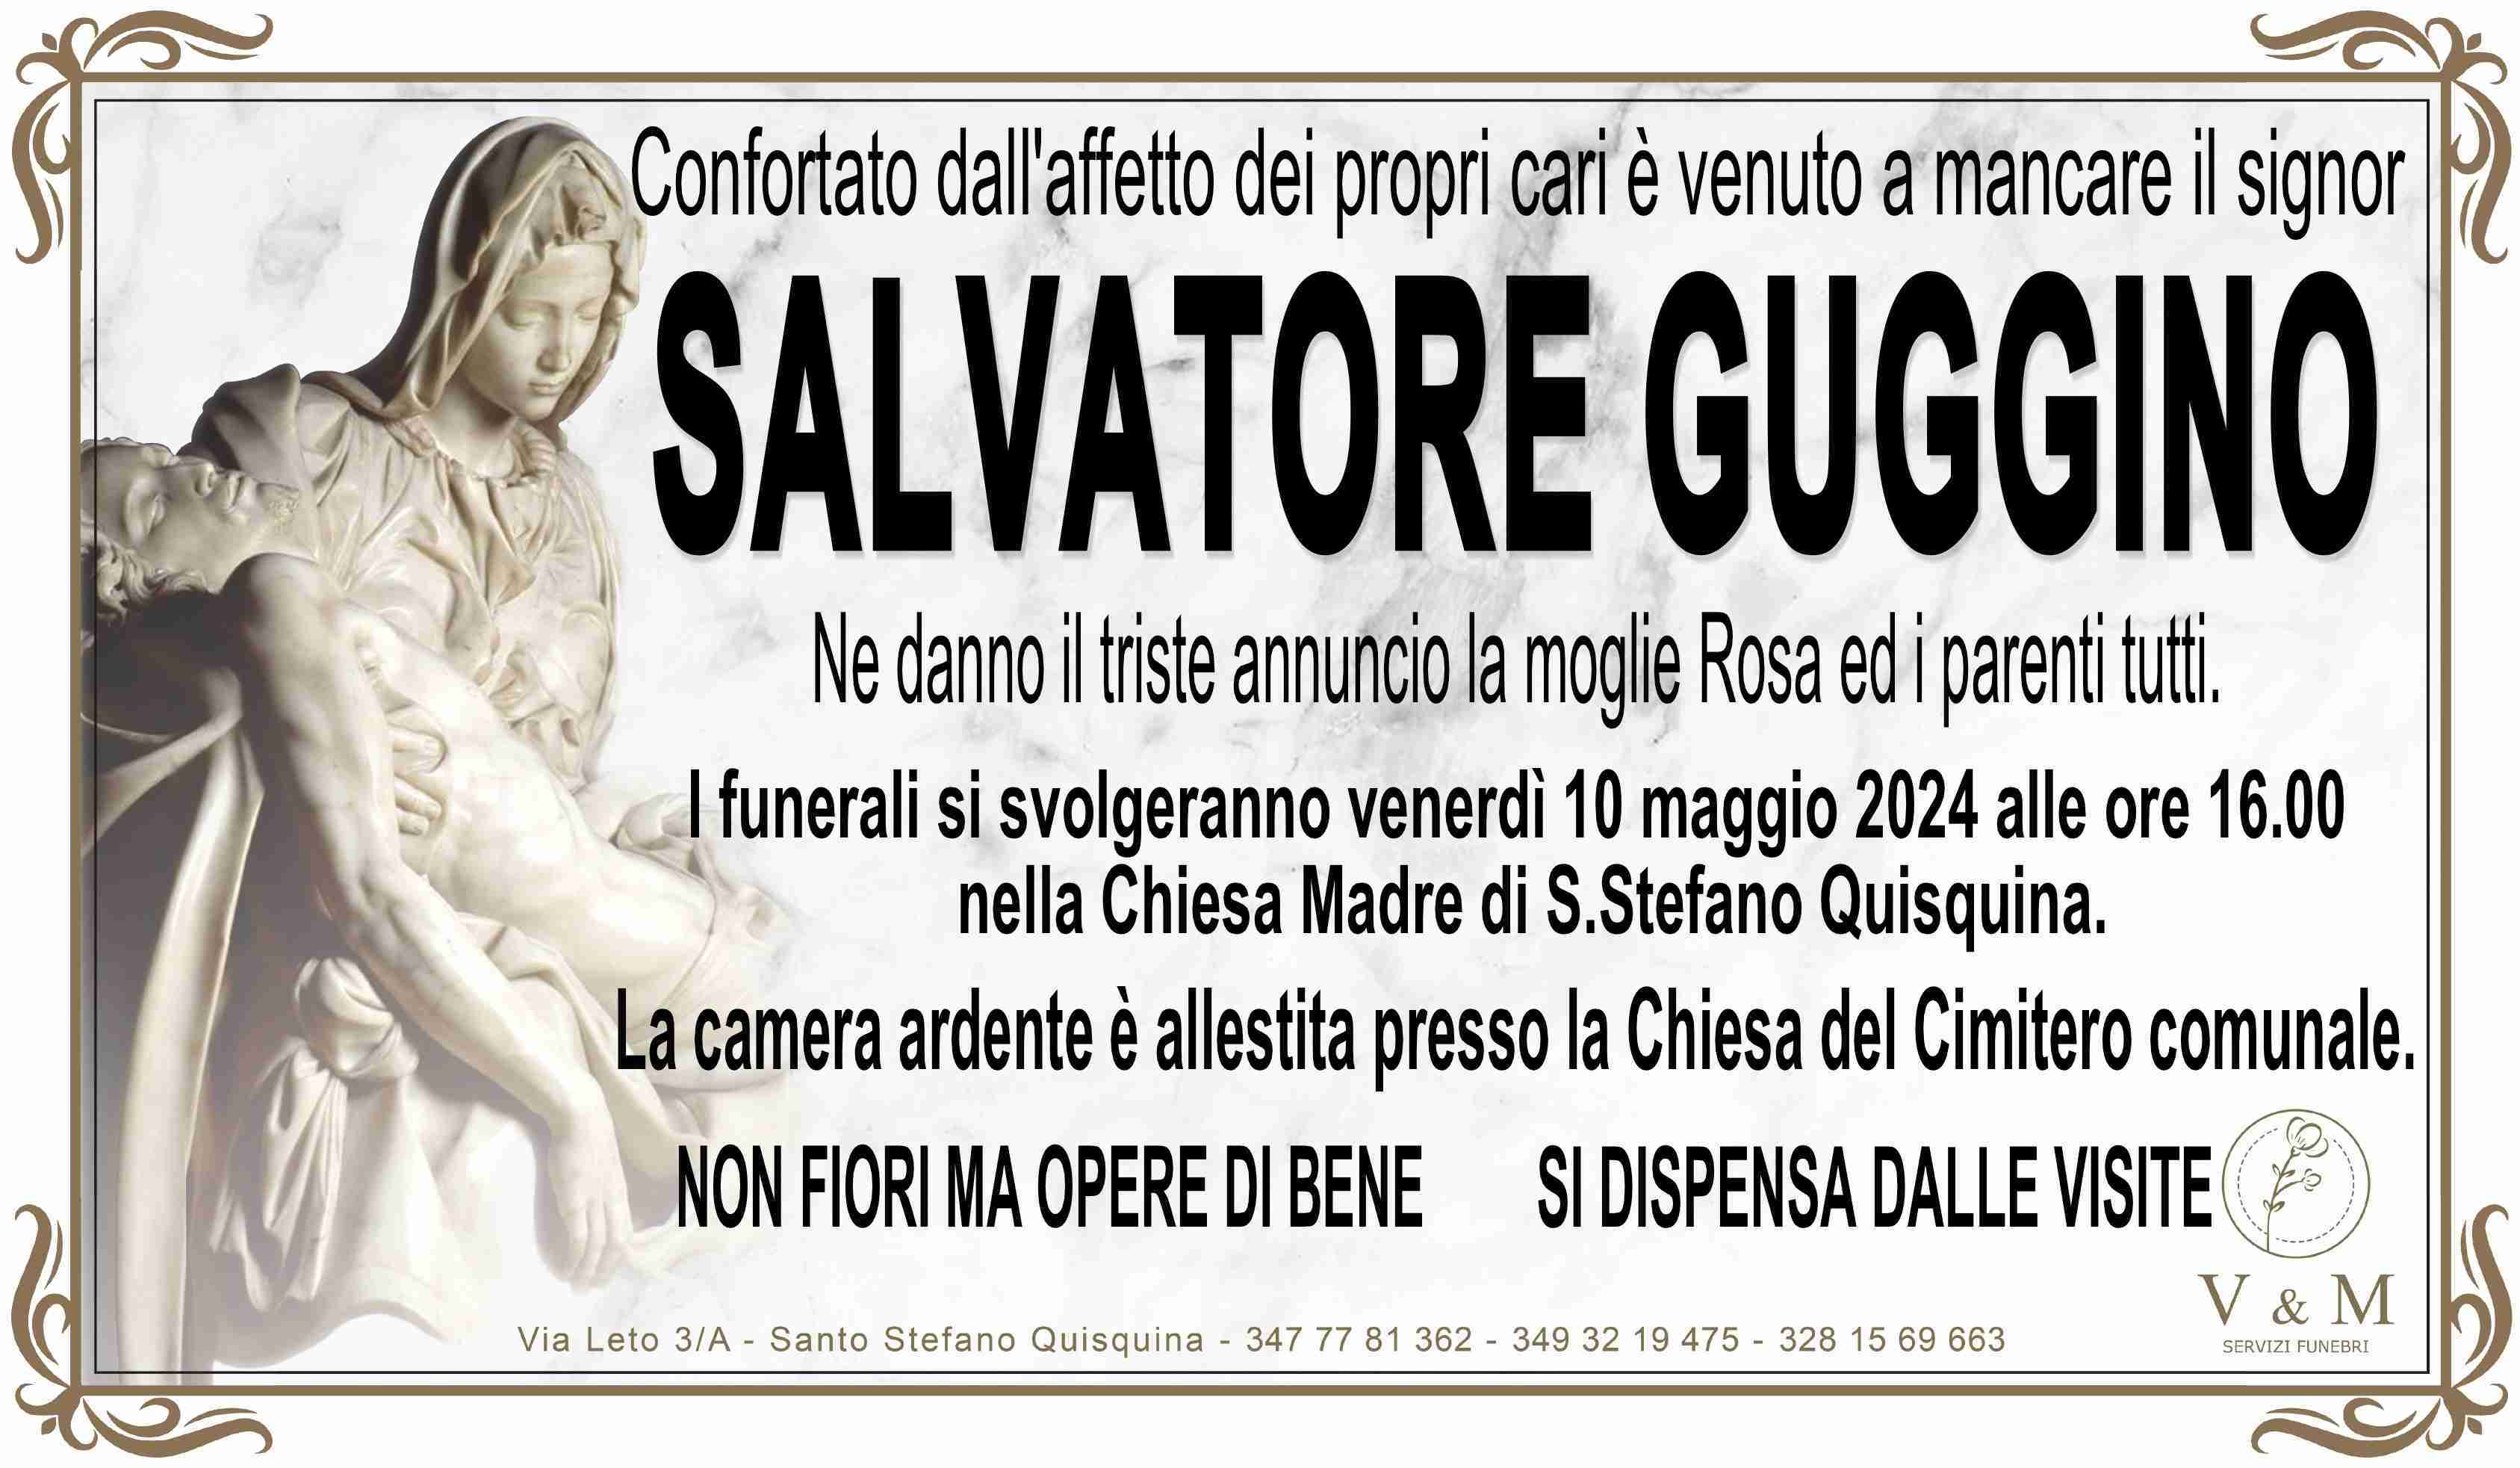 Salvatore Guggino